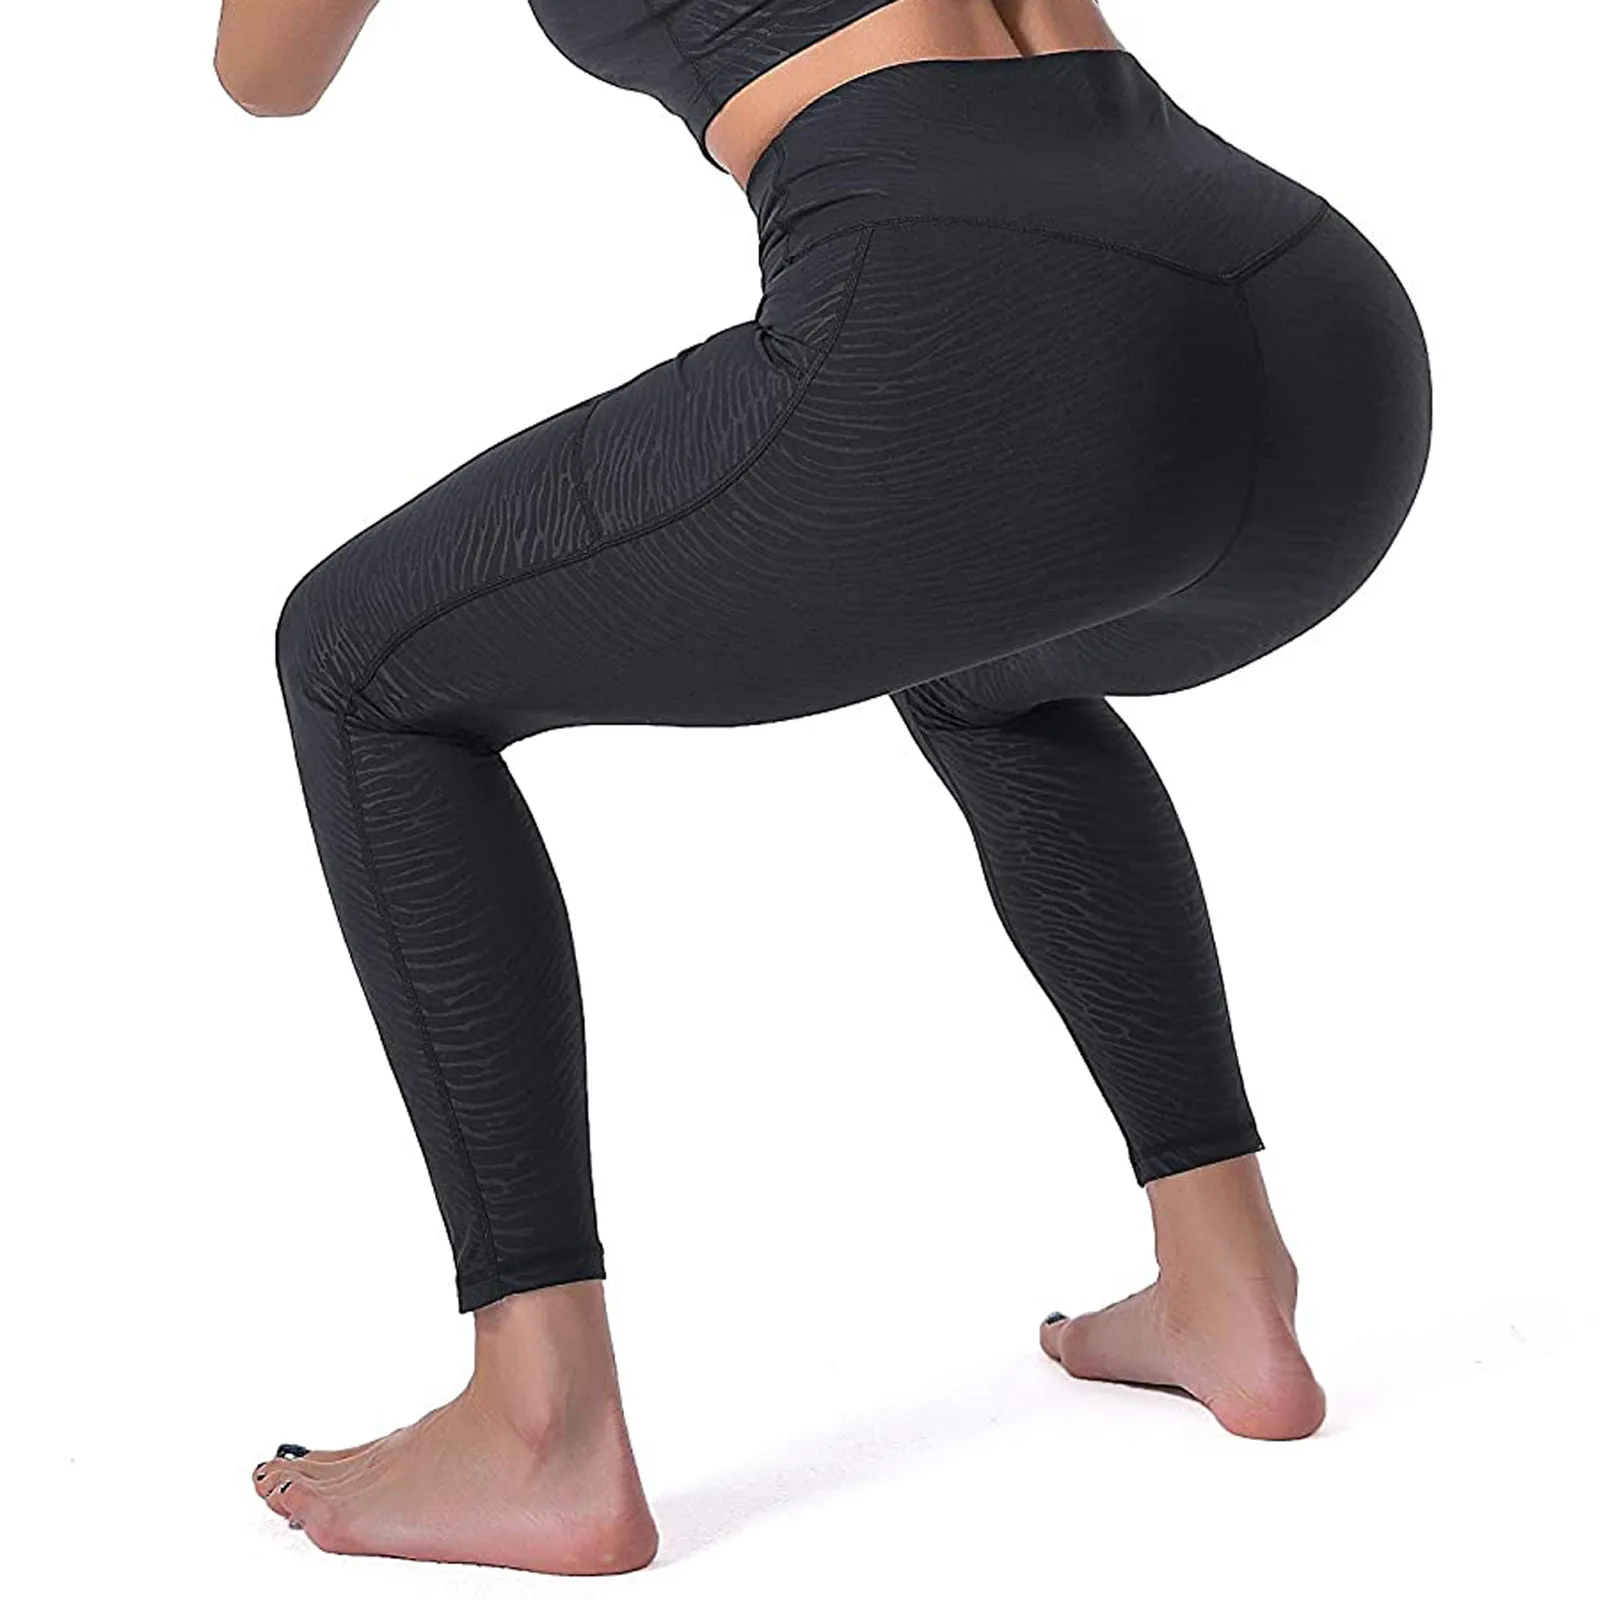 Moda leggings mulheres Senhoras Impresso Apertado Perfeita Adequação Executando Calças de Yoga leeging esporte femme pantalones de mulher